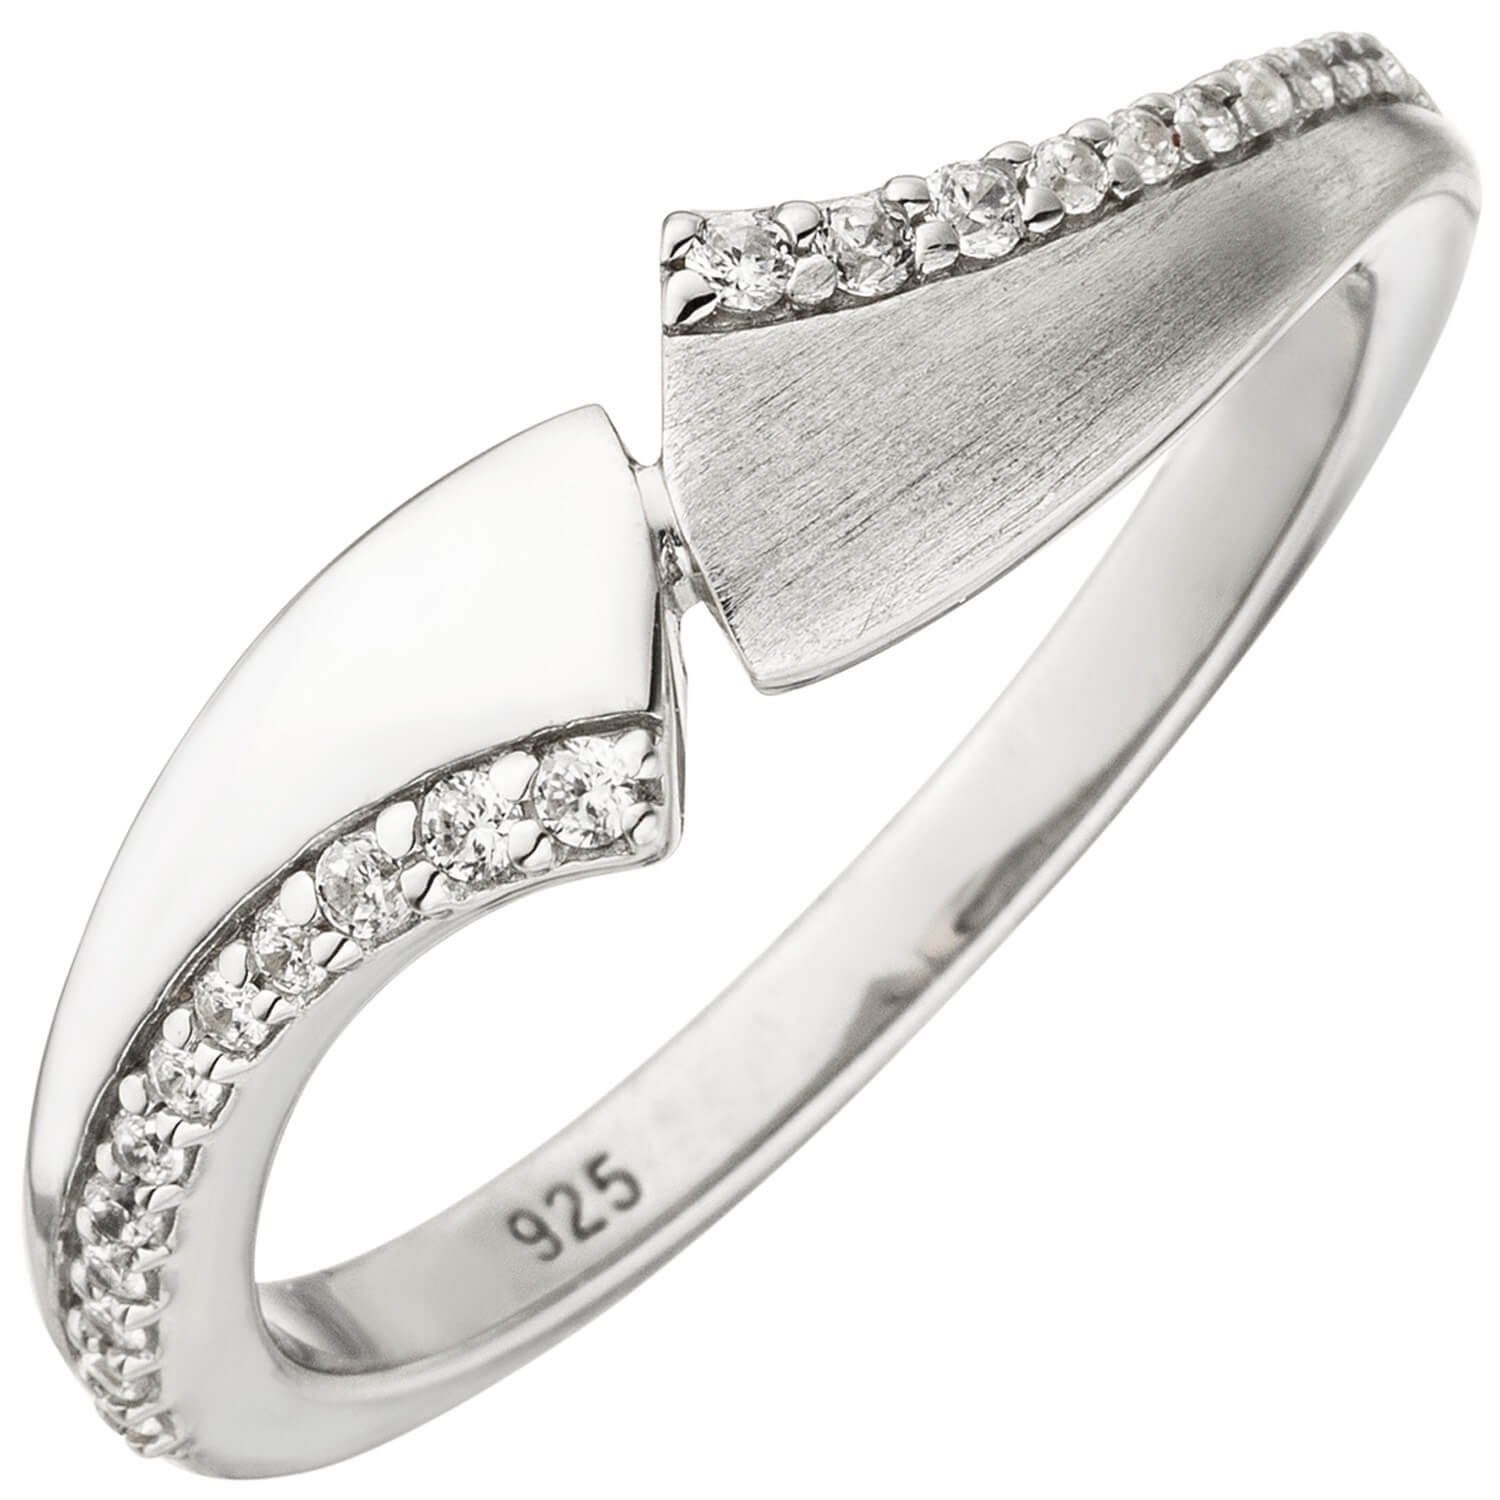 Schmuck Krone Silberring Ring eleganter Damenring mit weißen Zirkonia 925  Silber, Fingerschmuck teilmatt, Silber 925